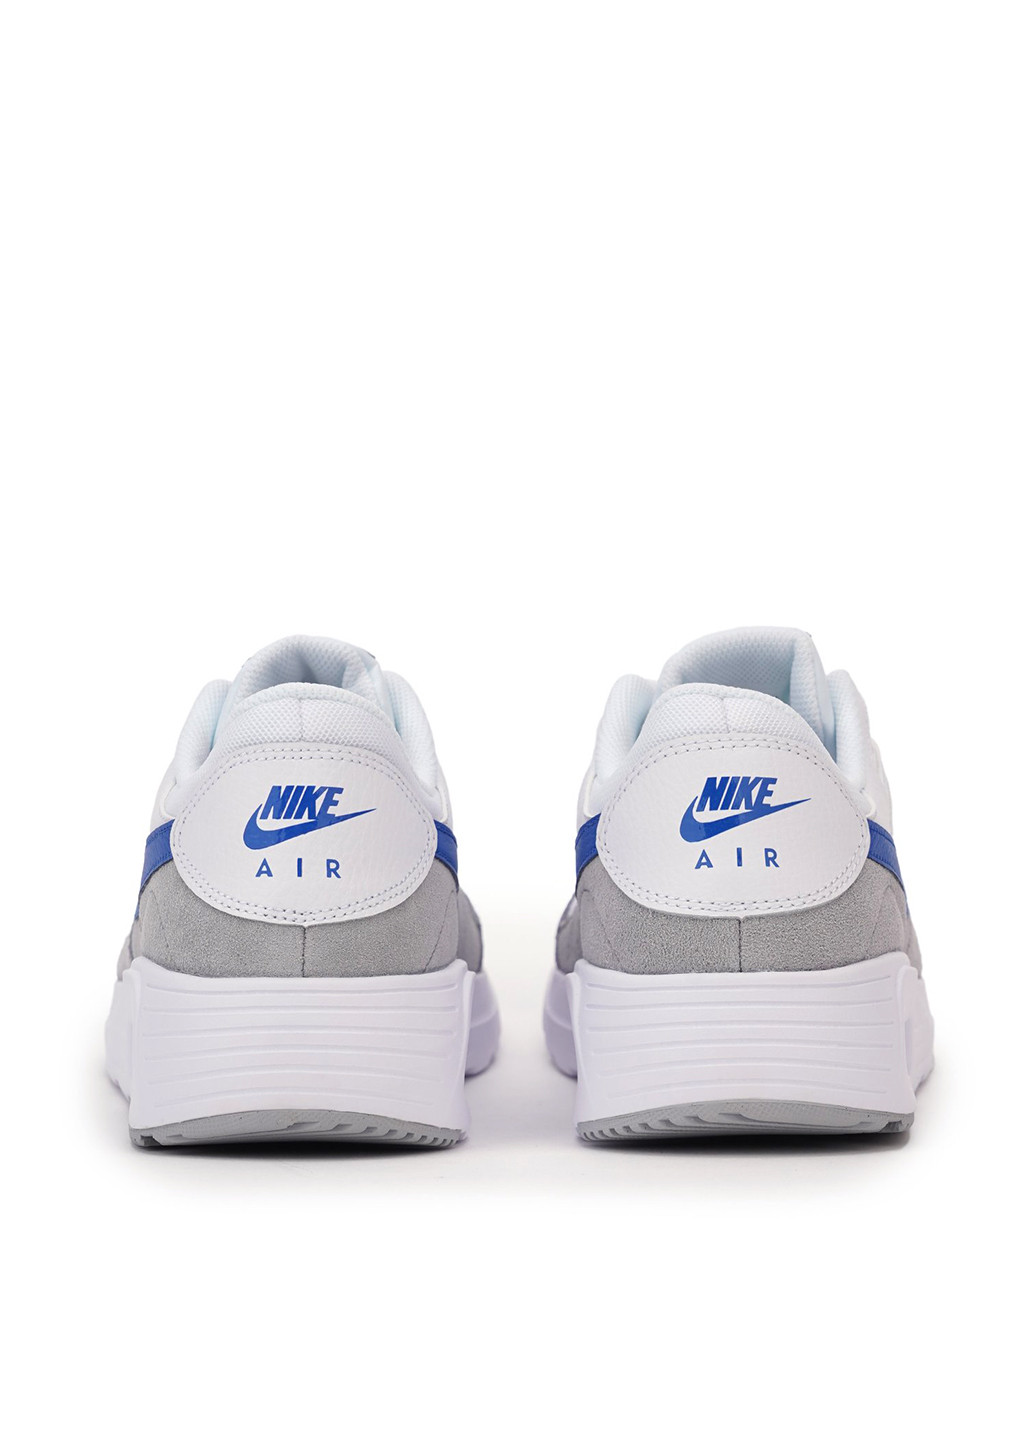 Цветные демисезонные кроссовки Nike Nike Air Max Sc